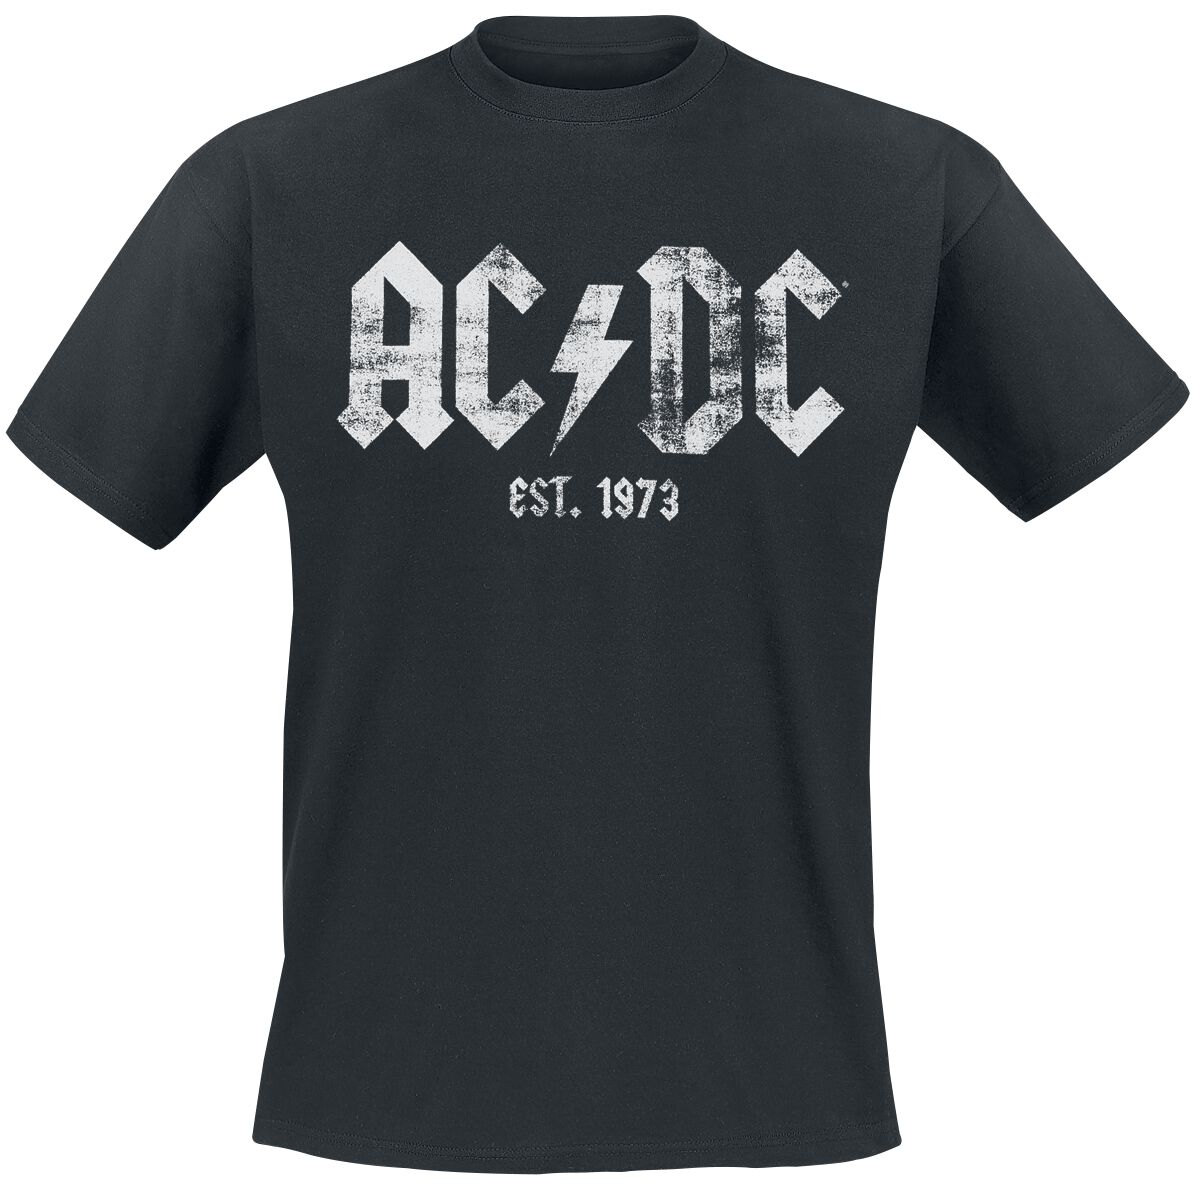 AC/DC Est, 1973 T-Shirt schwarz in S